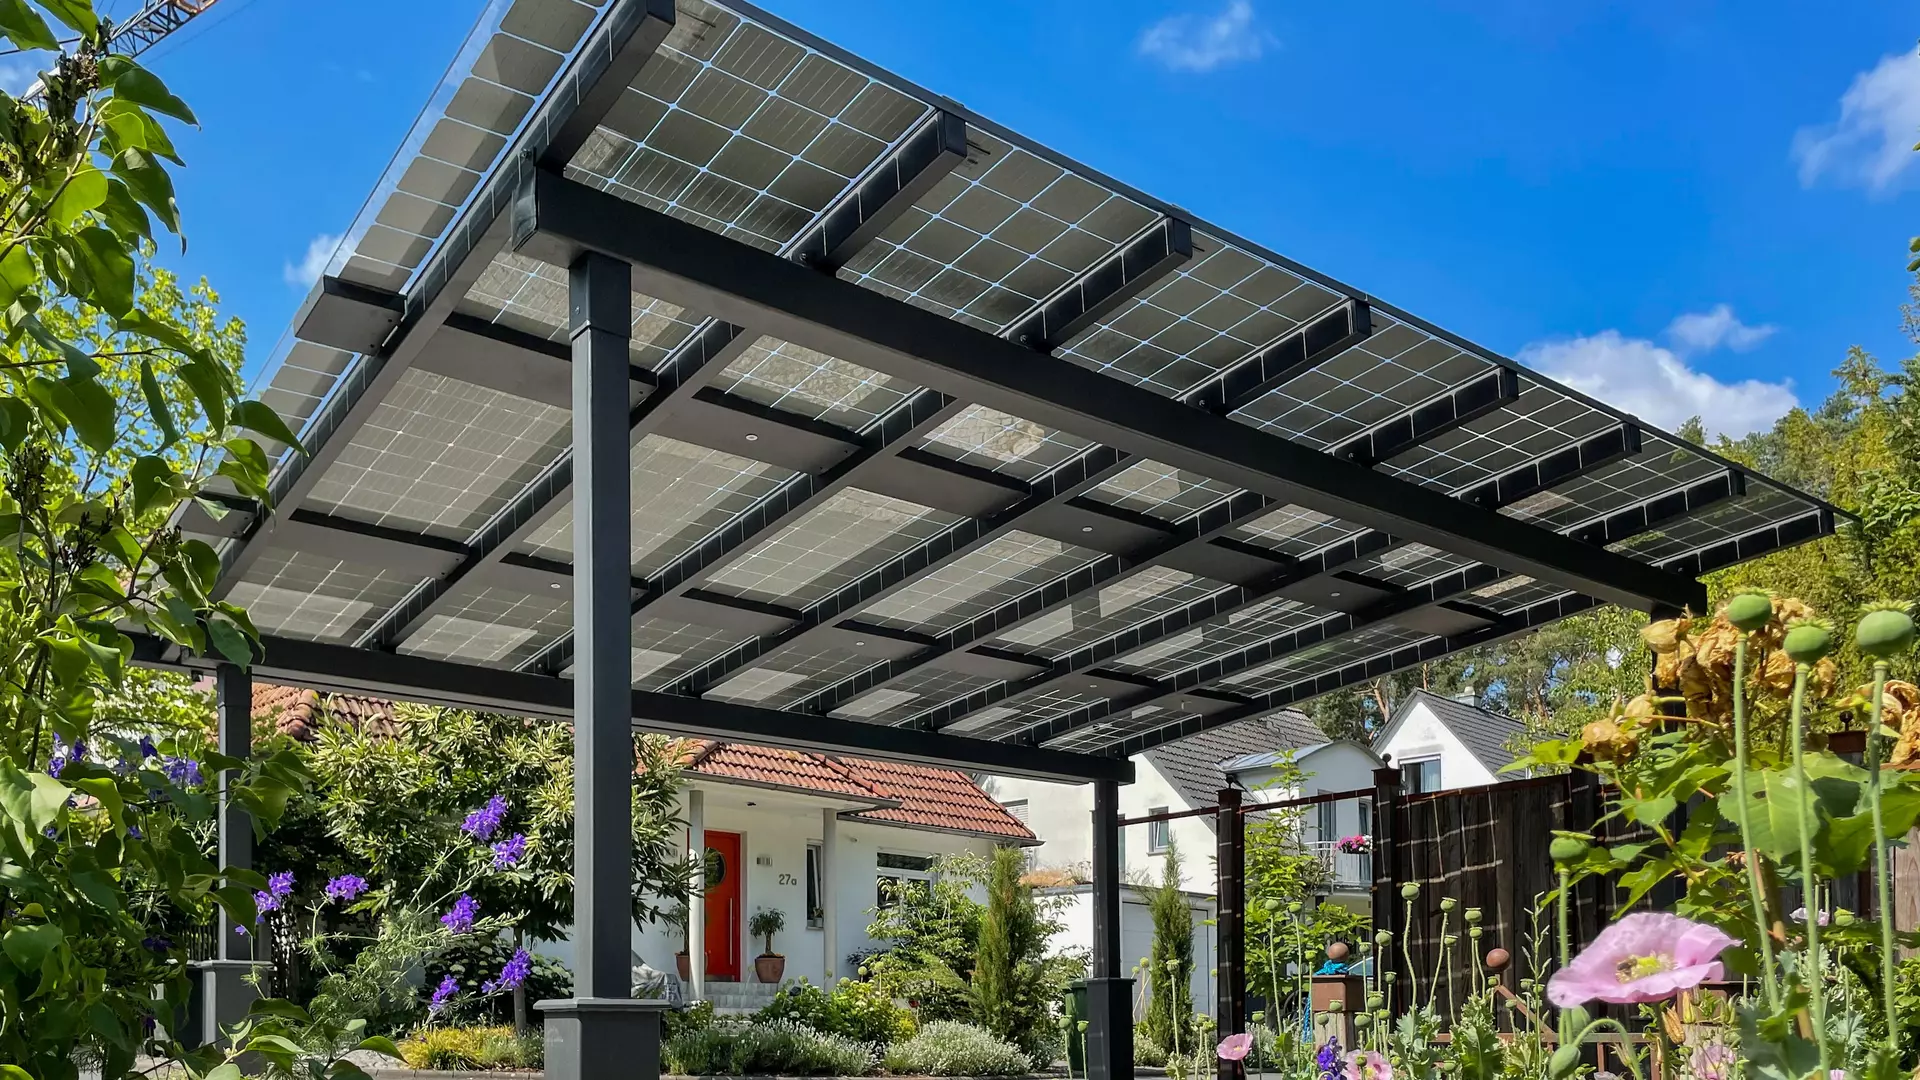 Photovoltaik-Module in einem Solarcarport